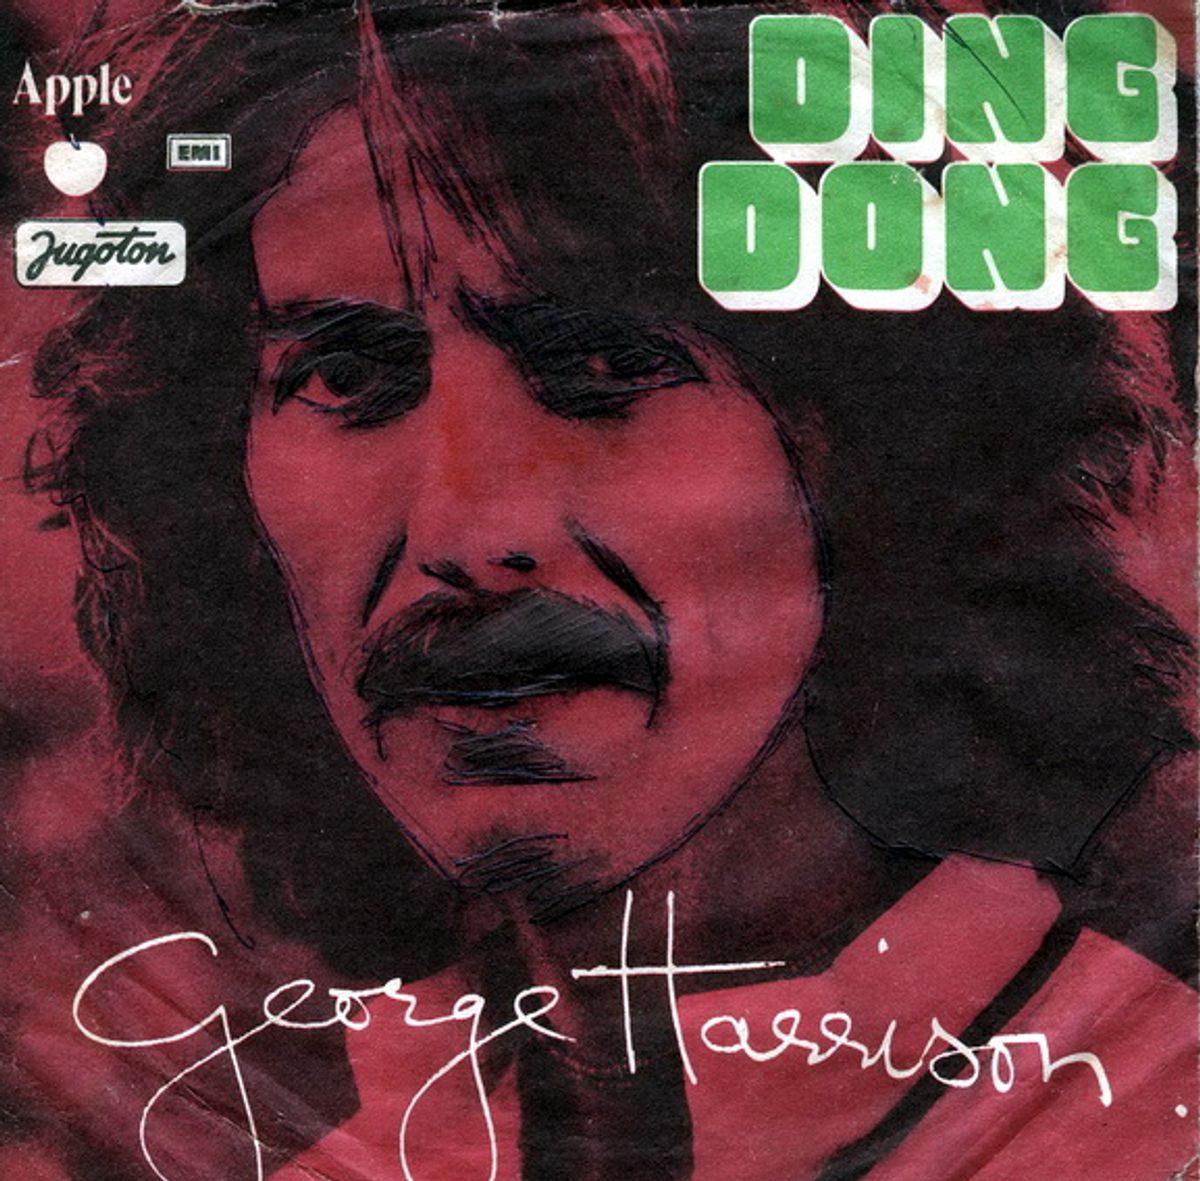 #Klokkengebeier - George Harrison - Ding Dong Ding Dong (1974)